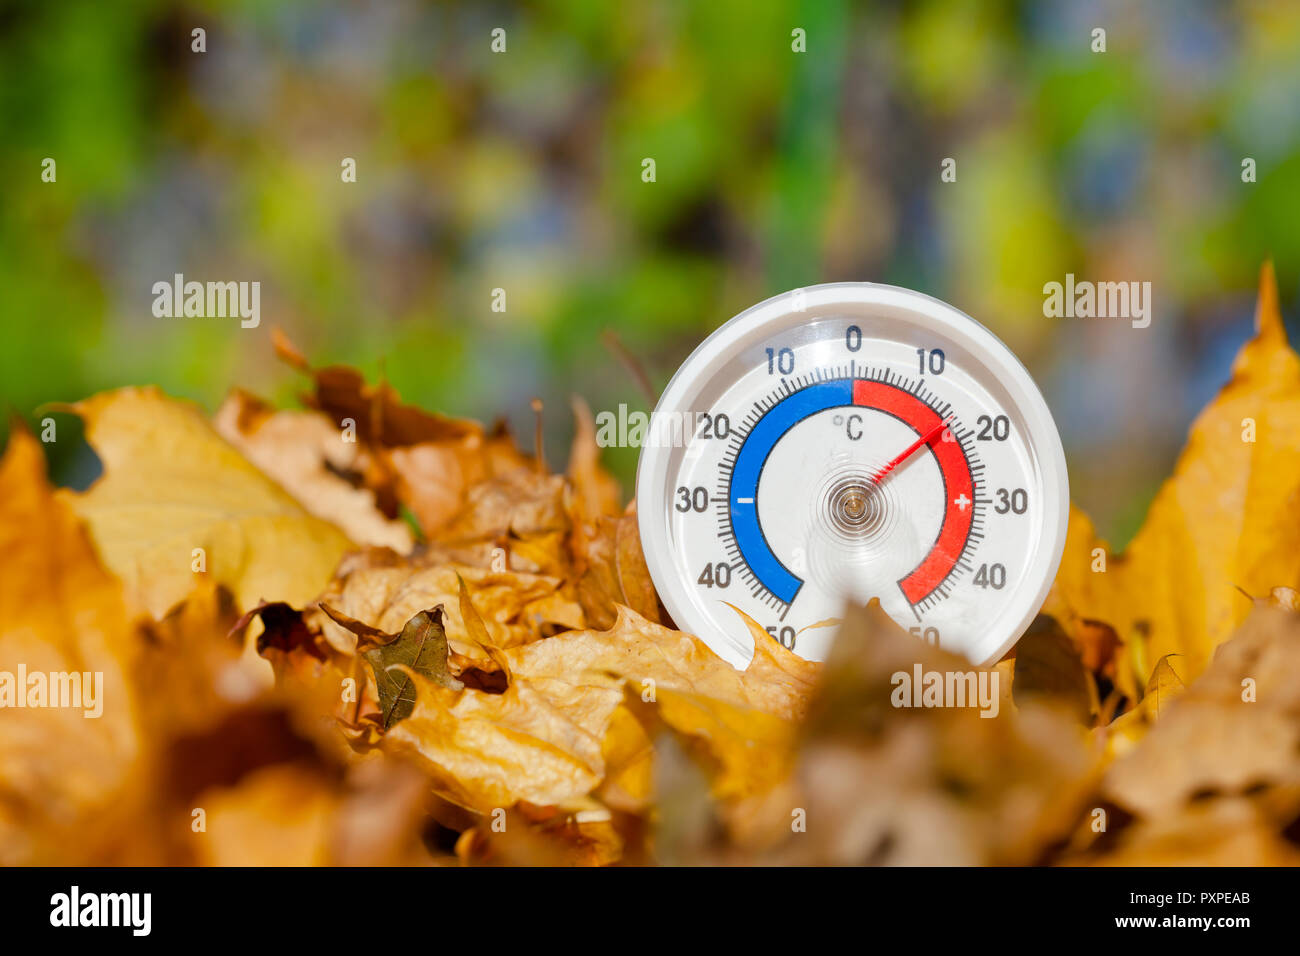 Termometro da esterno con scala Celsius in golden foglie di acero che mostra la temperatura calda - hot estate indiana o il riscaldamento globale concetto Foto Stock